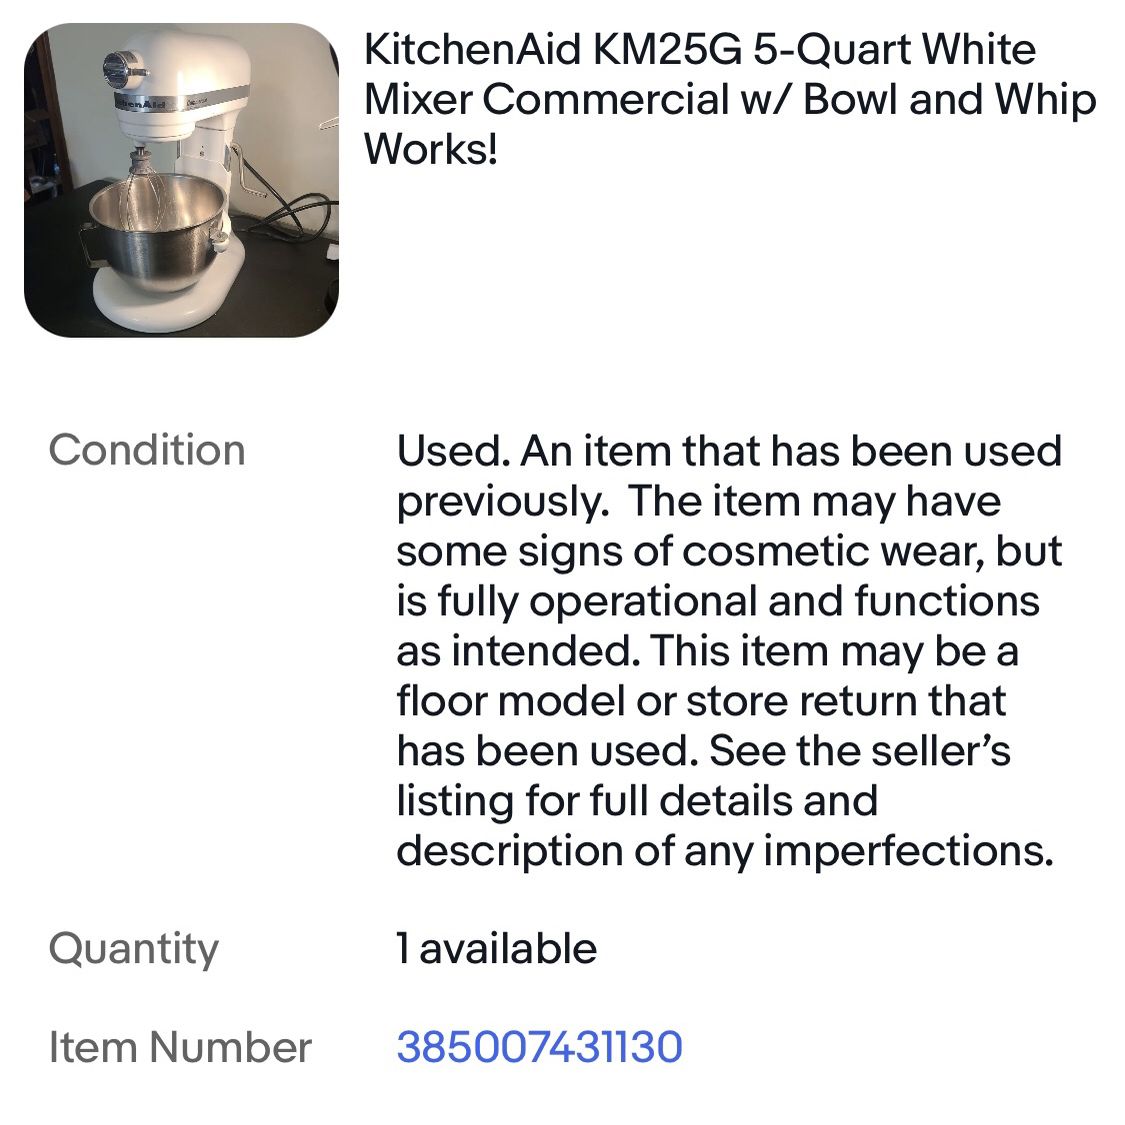 KitchenAid KM25G White 5-Quart Mixer Commercial